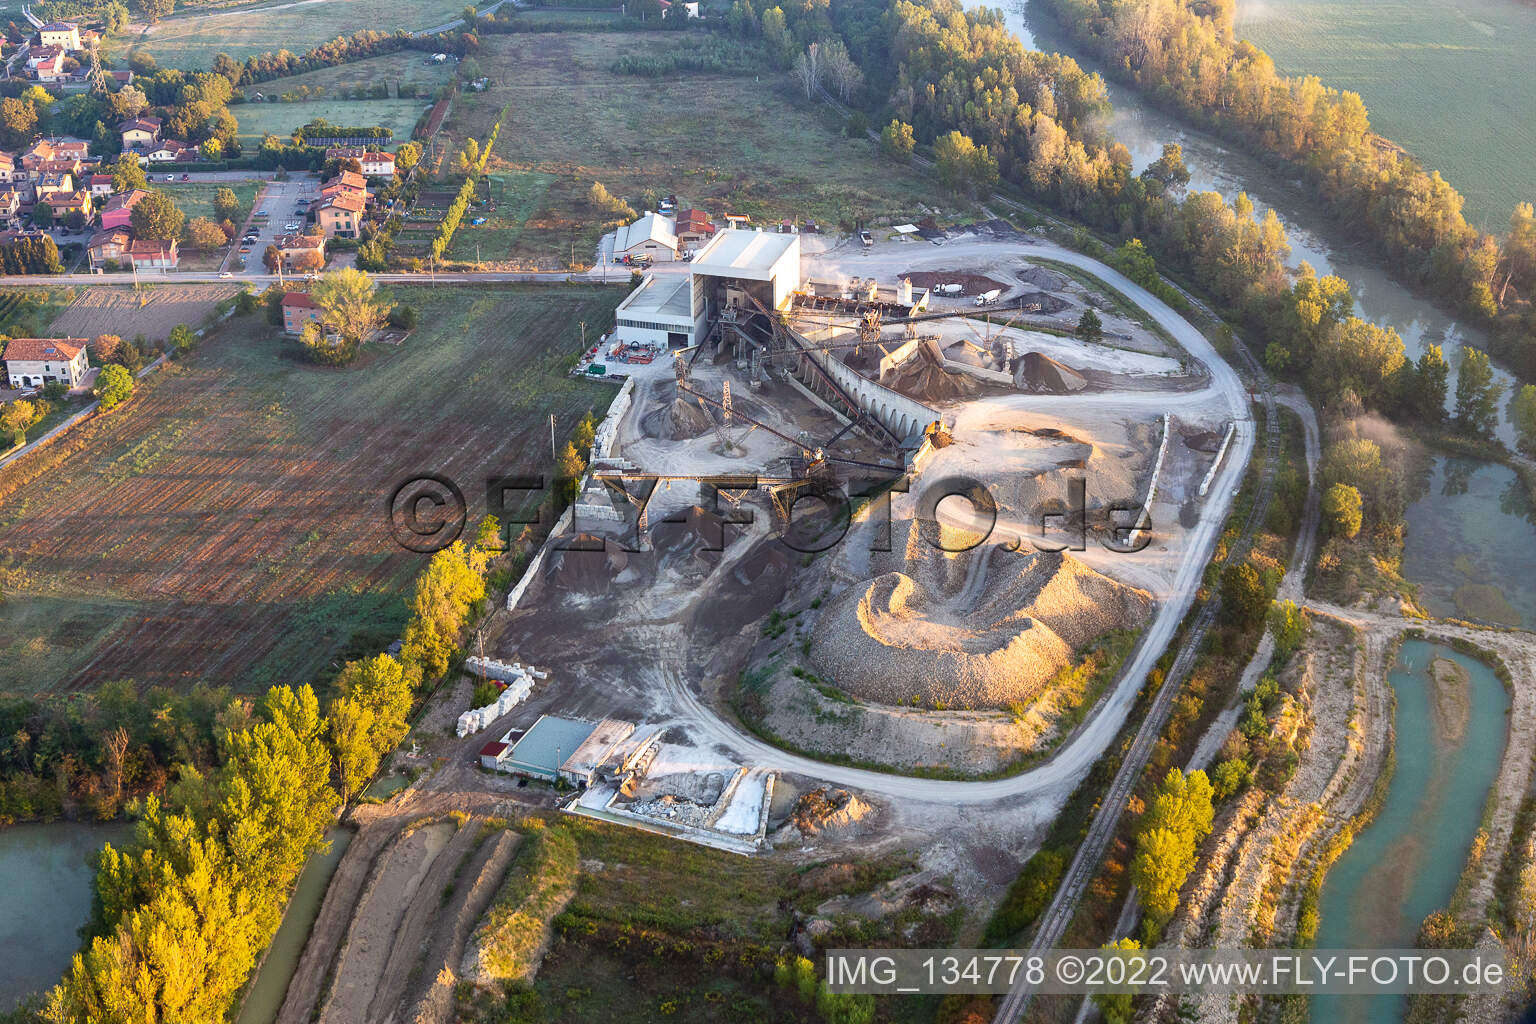 Vue aérienne de Station thermale Calcestruzzi à Rubiera dans le département Reggio Emilia, Italie